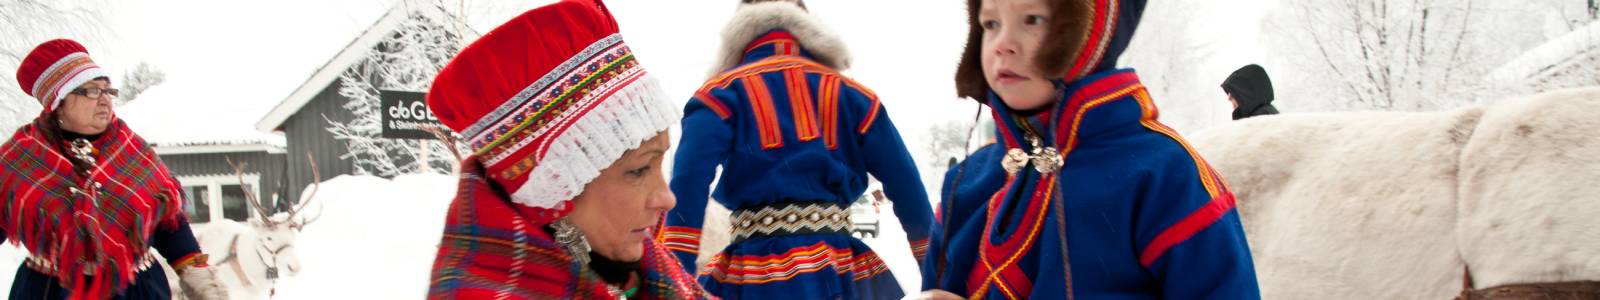 De Sami cultuur in Lapland